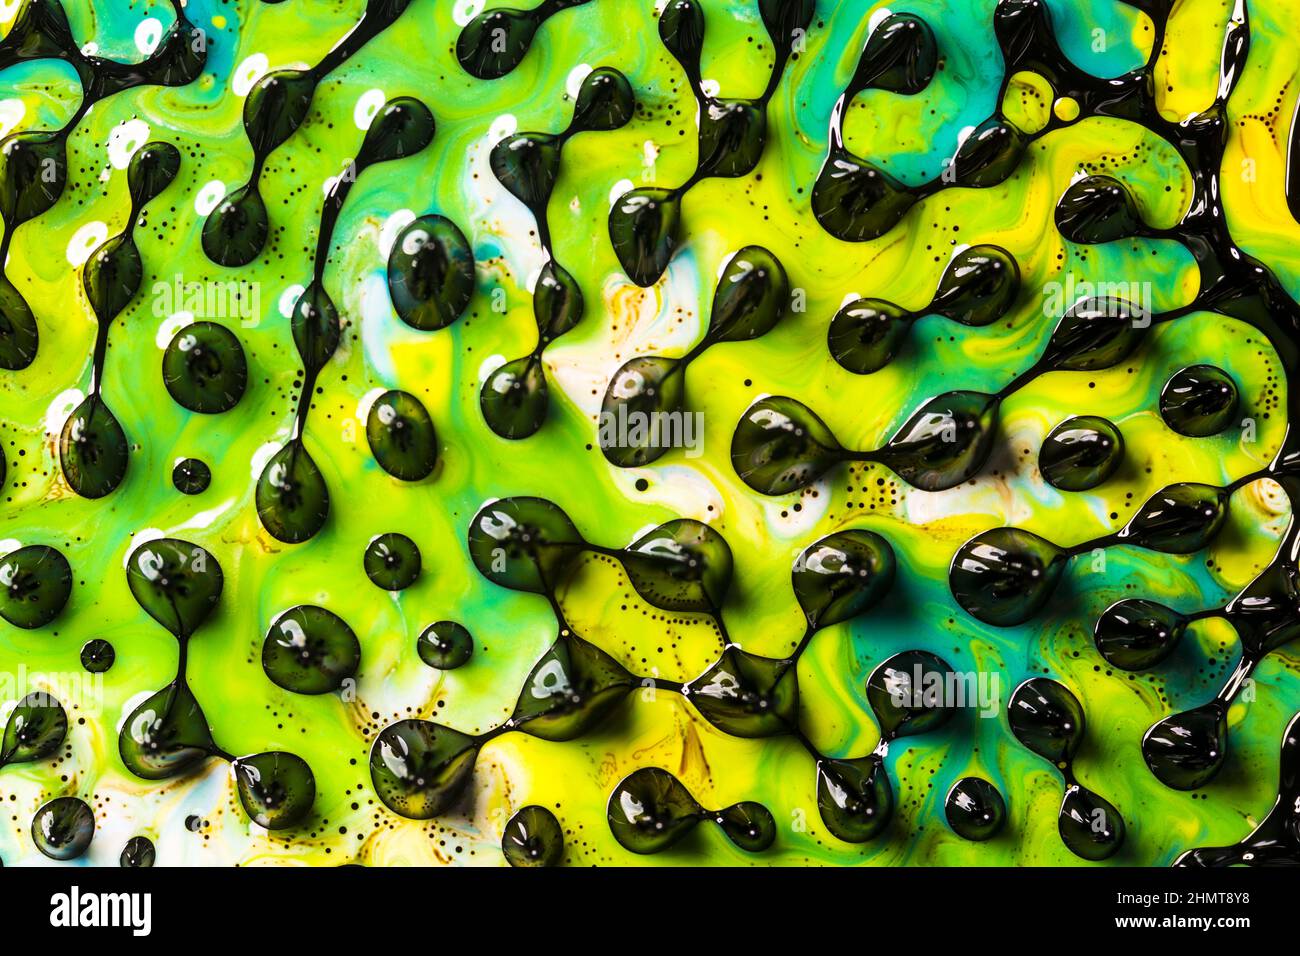 Arte astratta. Vortici, design artistico con coloratissimi colori a olio che formano sorprendenti strutture intricate con ferrofluido. Foto Stock